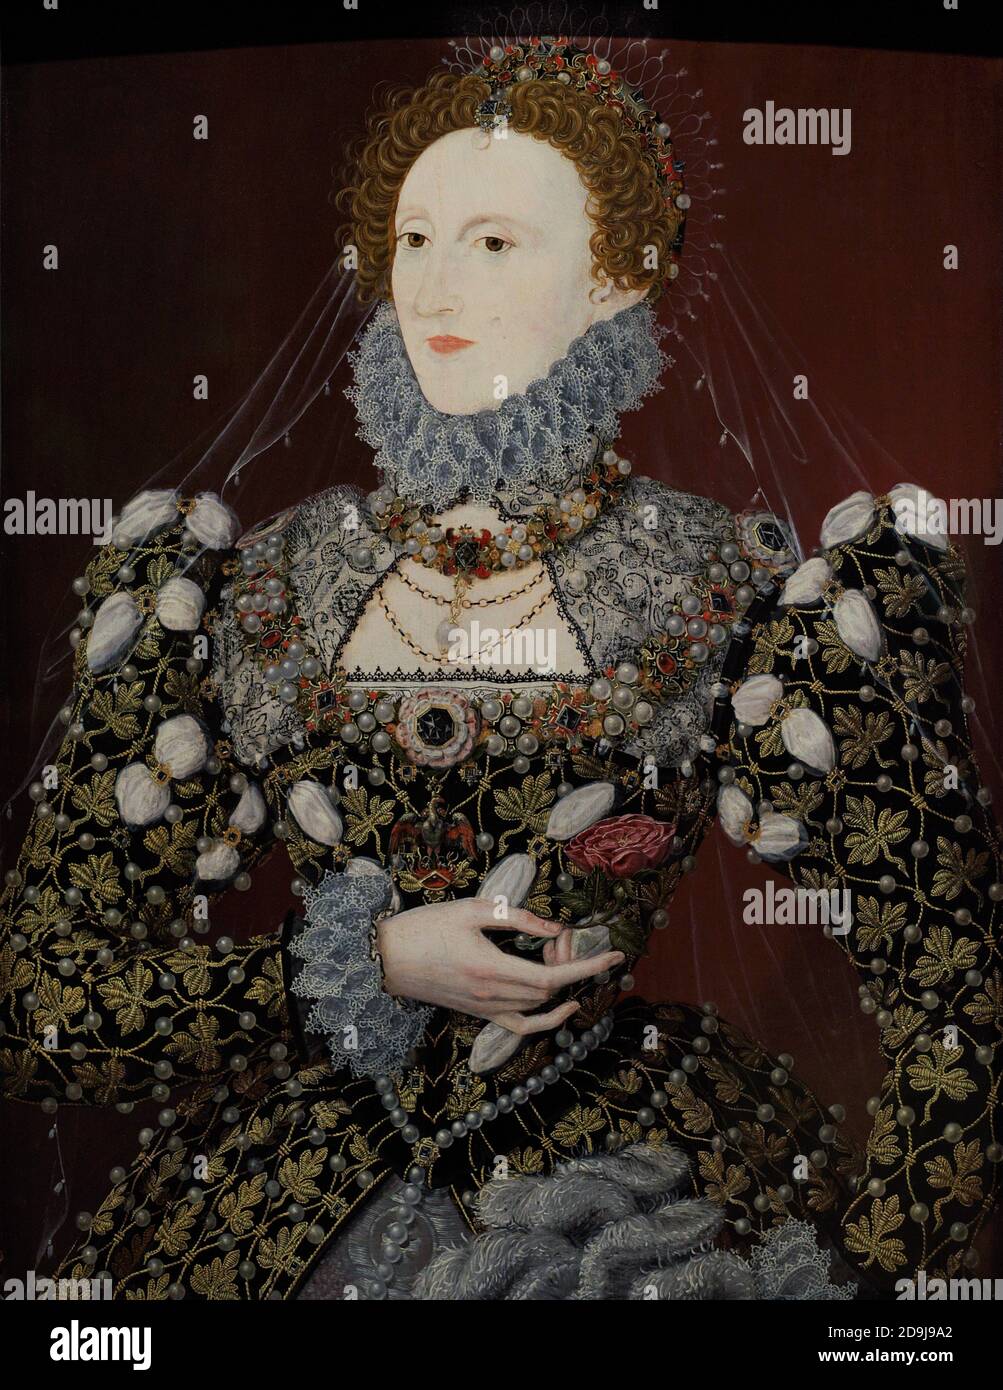 Königin Elisabeth I. von England (1533-1603). Porträt von Nicholas Hilliard. Öl auf Platte, c. 1575. Bekannt als das "Phoenix"-Porträt nach dem Juwel, das Elizabeth an ihrer Brust trägt. National Portrait Gallery. London, England, Vereinigtes Königreich. Stockfoto